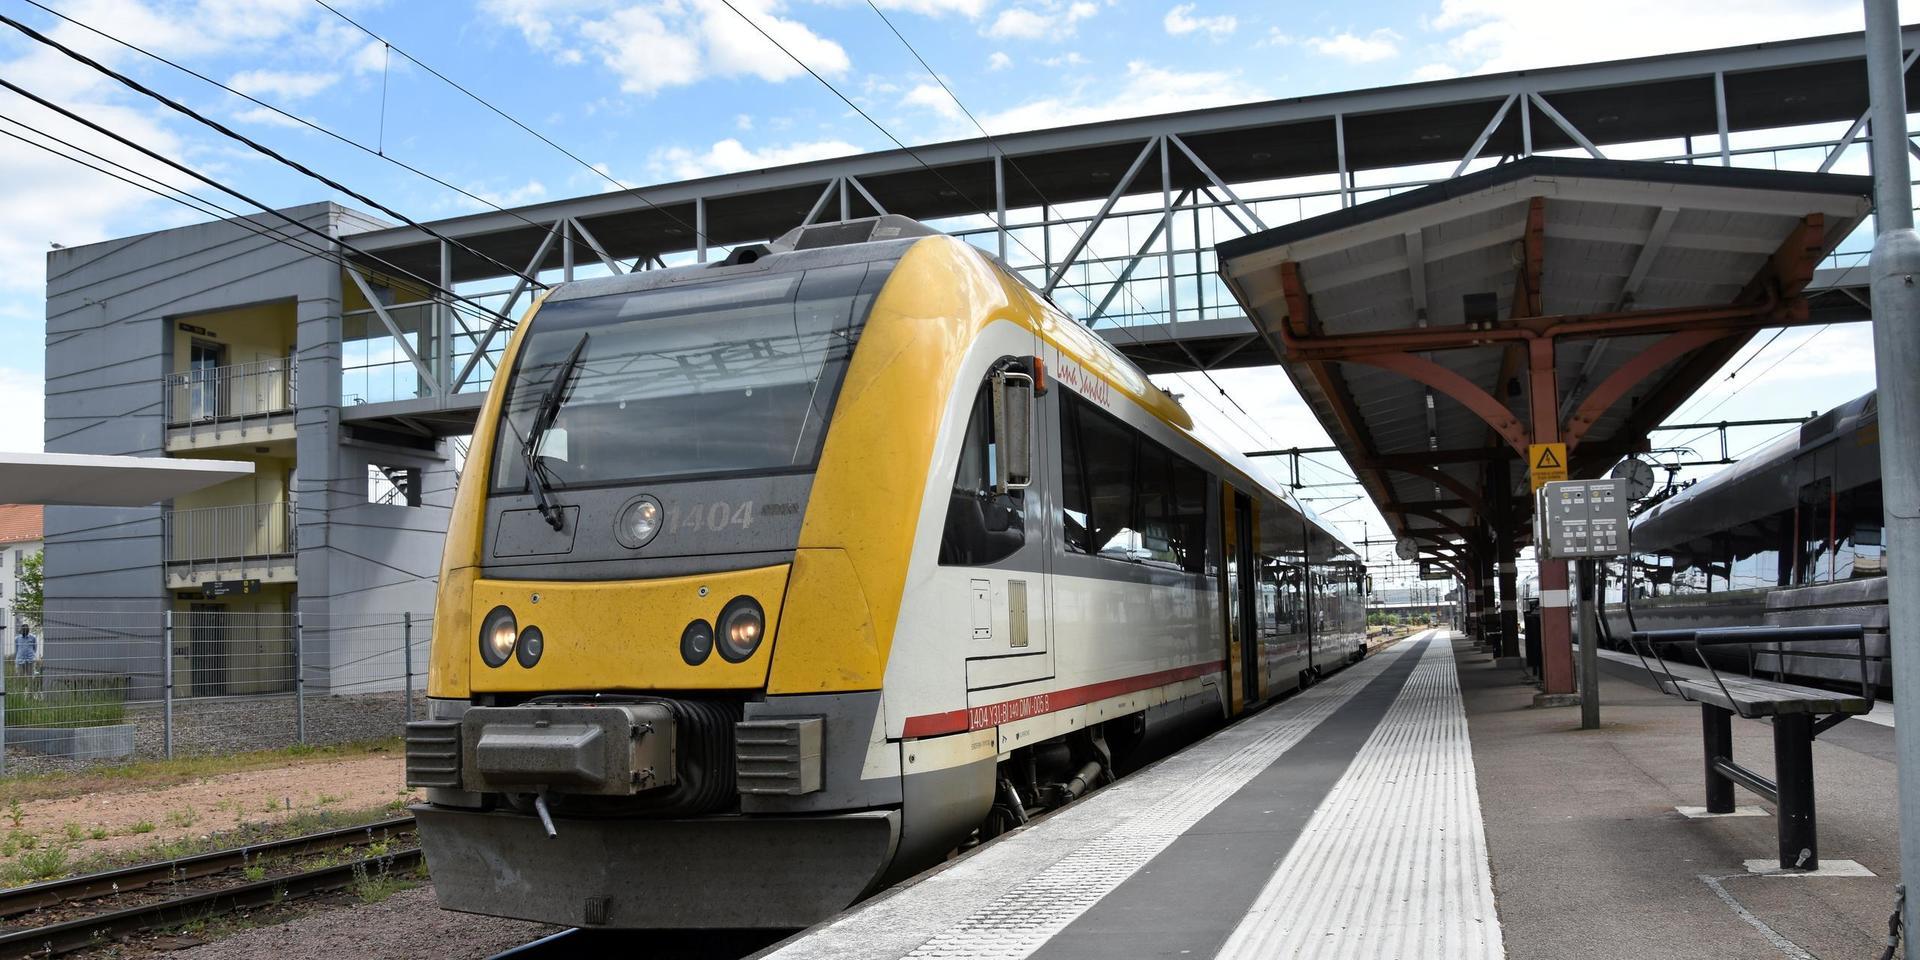 Krösatåget kör sträckan Halmstad–Värnamo. Hallandstrafiken står för 55 procent av finansieringen, nämligen sträckan Halmstad–Smålandsstenar. Resten finansieras av Jönköpings länstrafik.